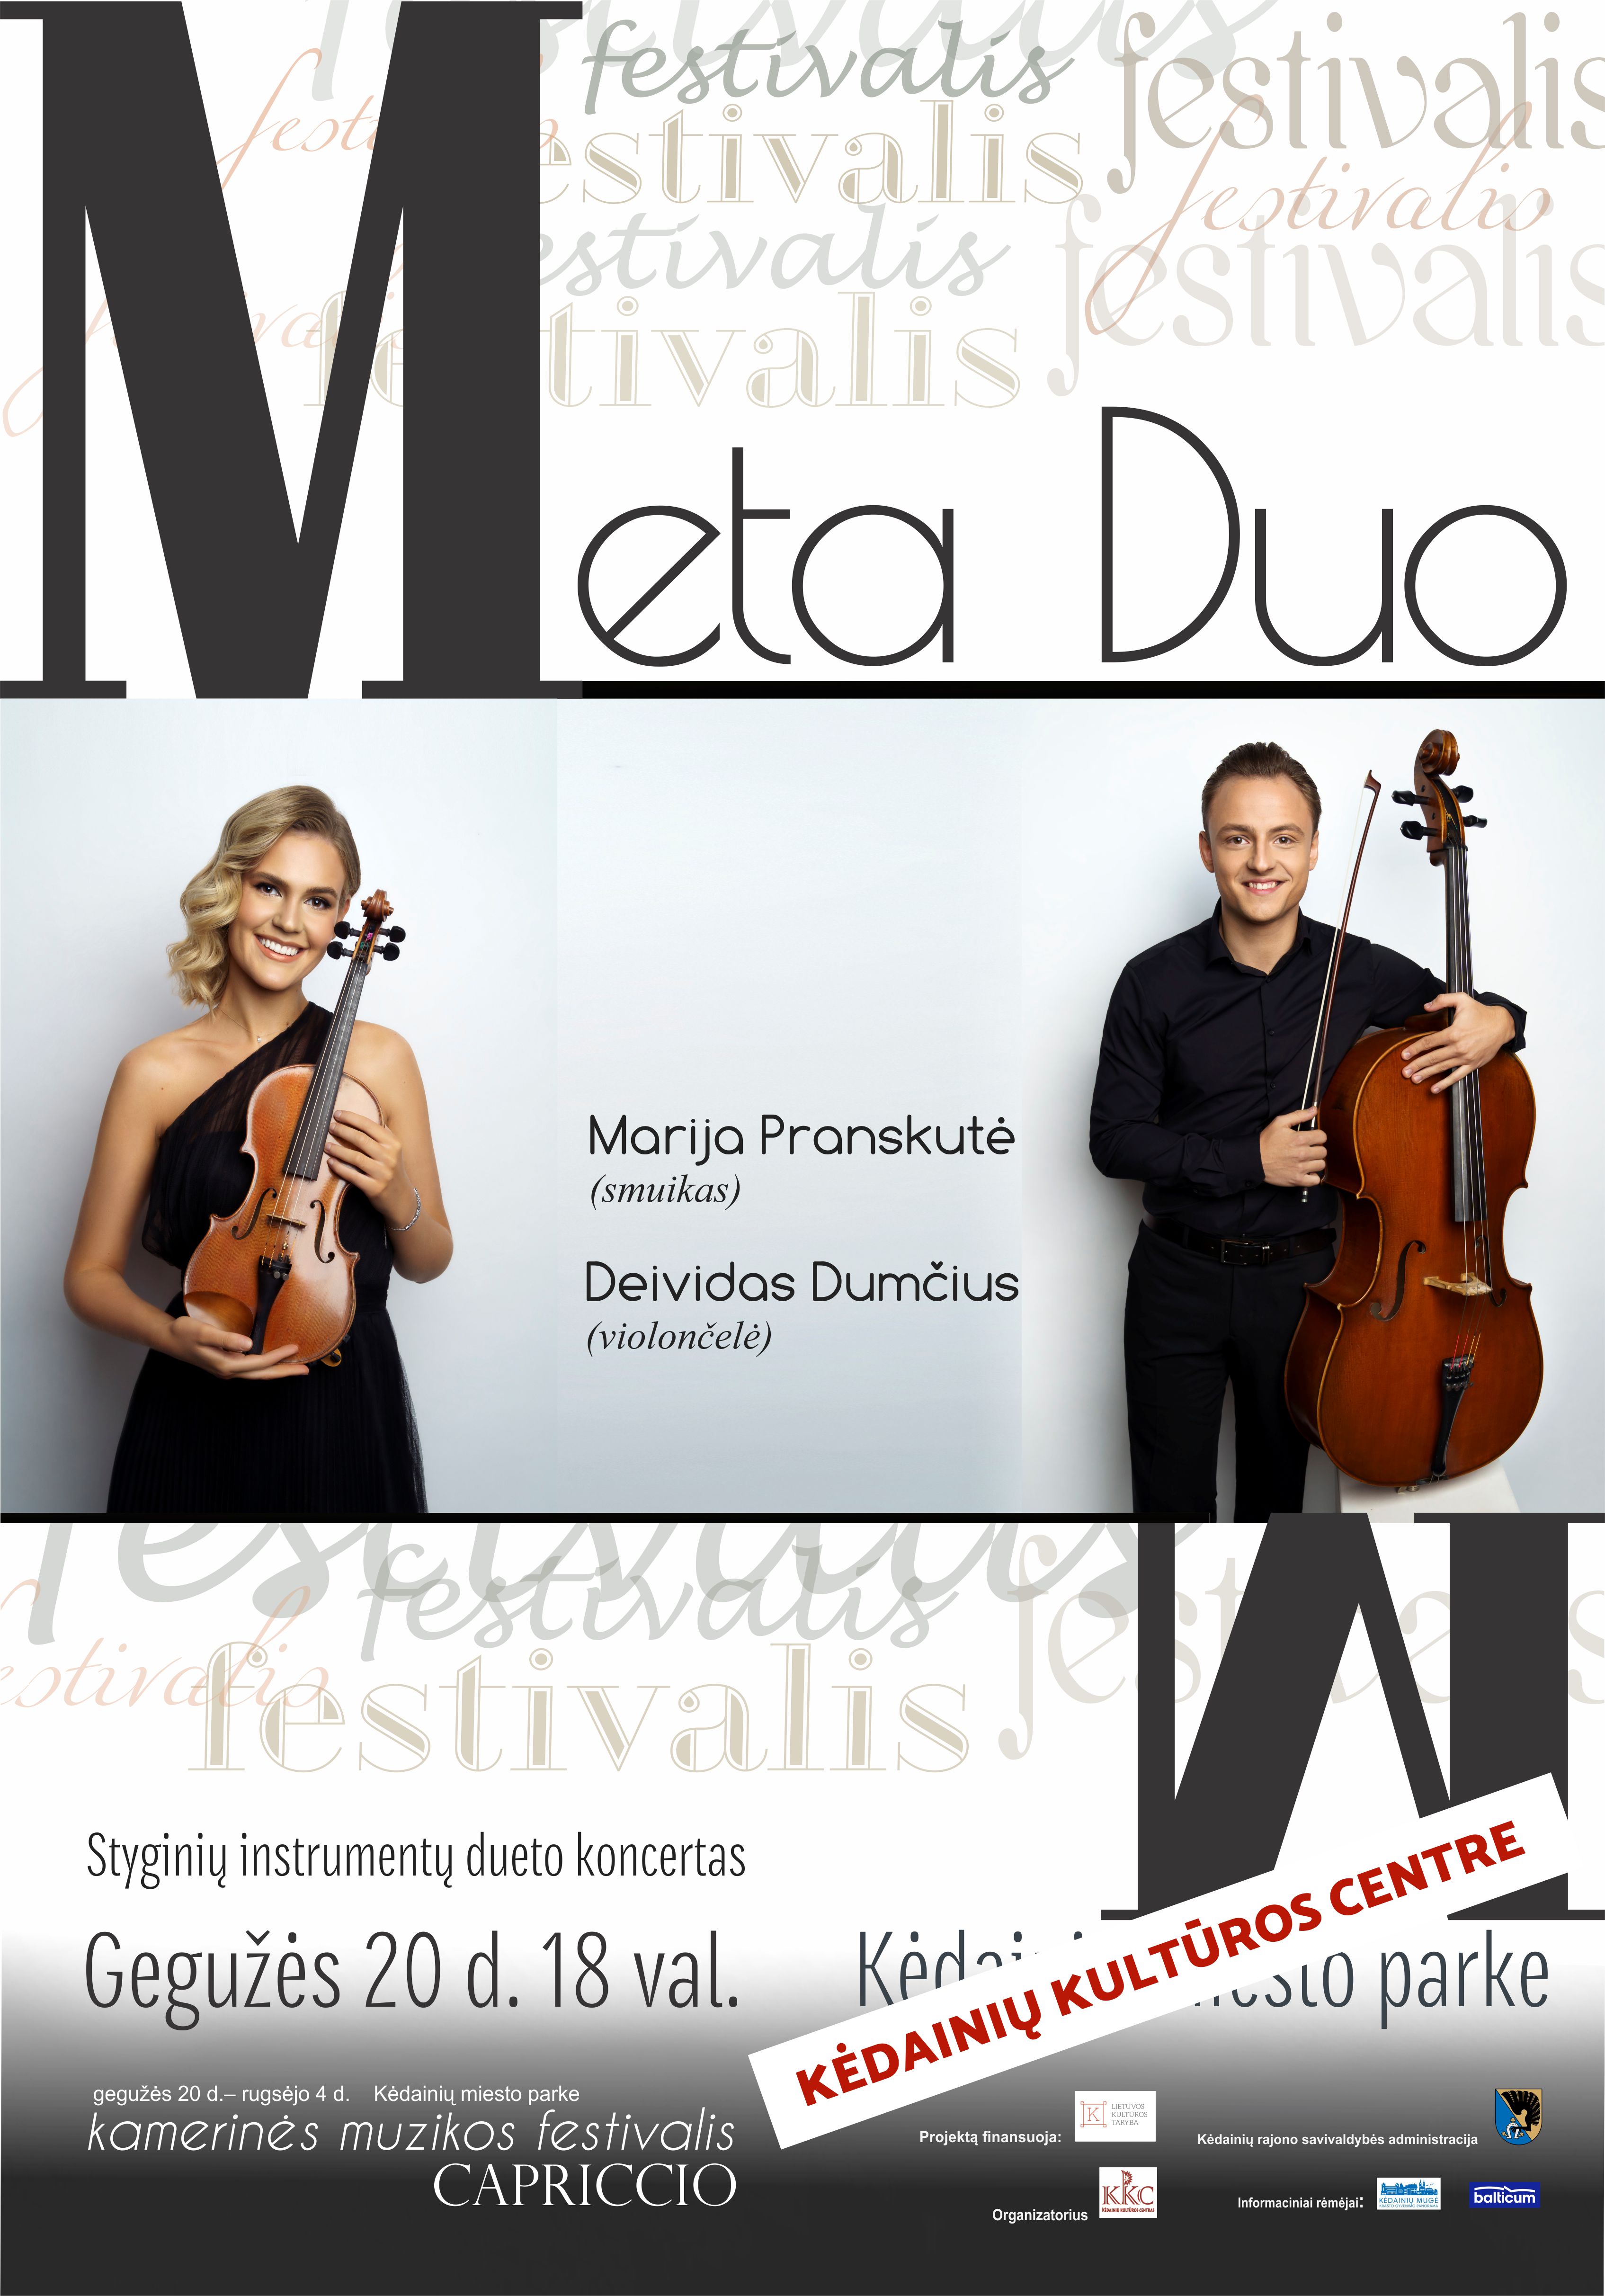 Styginių instrumentų dueto META DUO koncertas vyks KĖDAINIŲ KULTŪROS CENTRE!